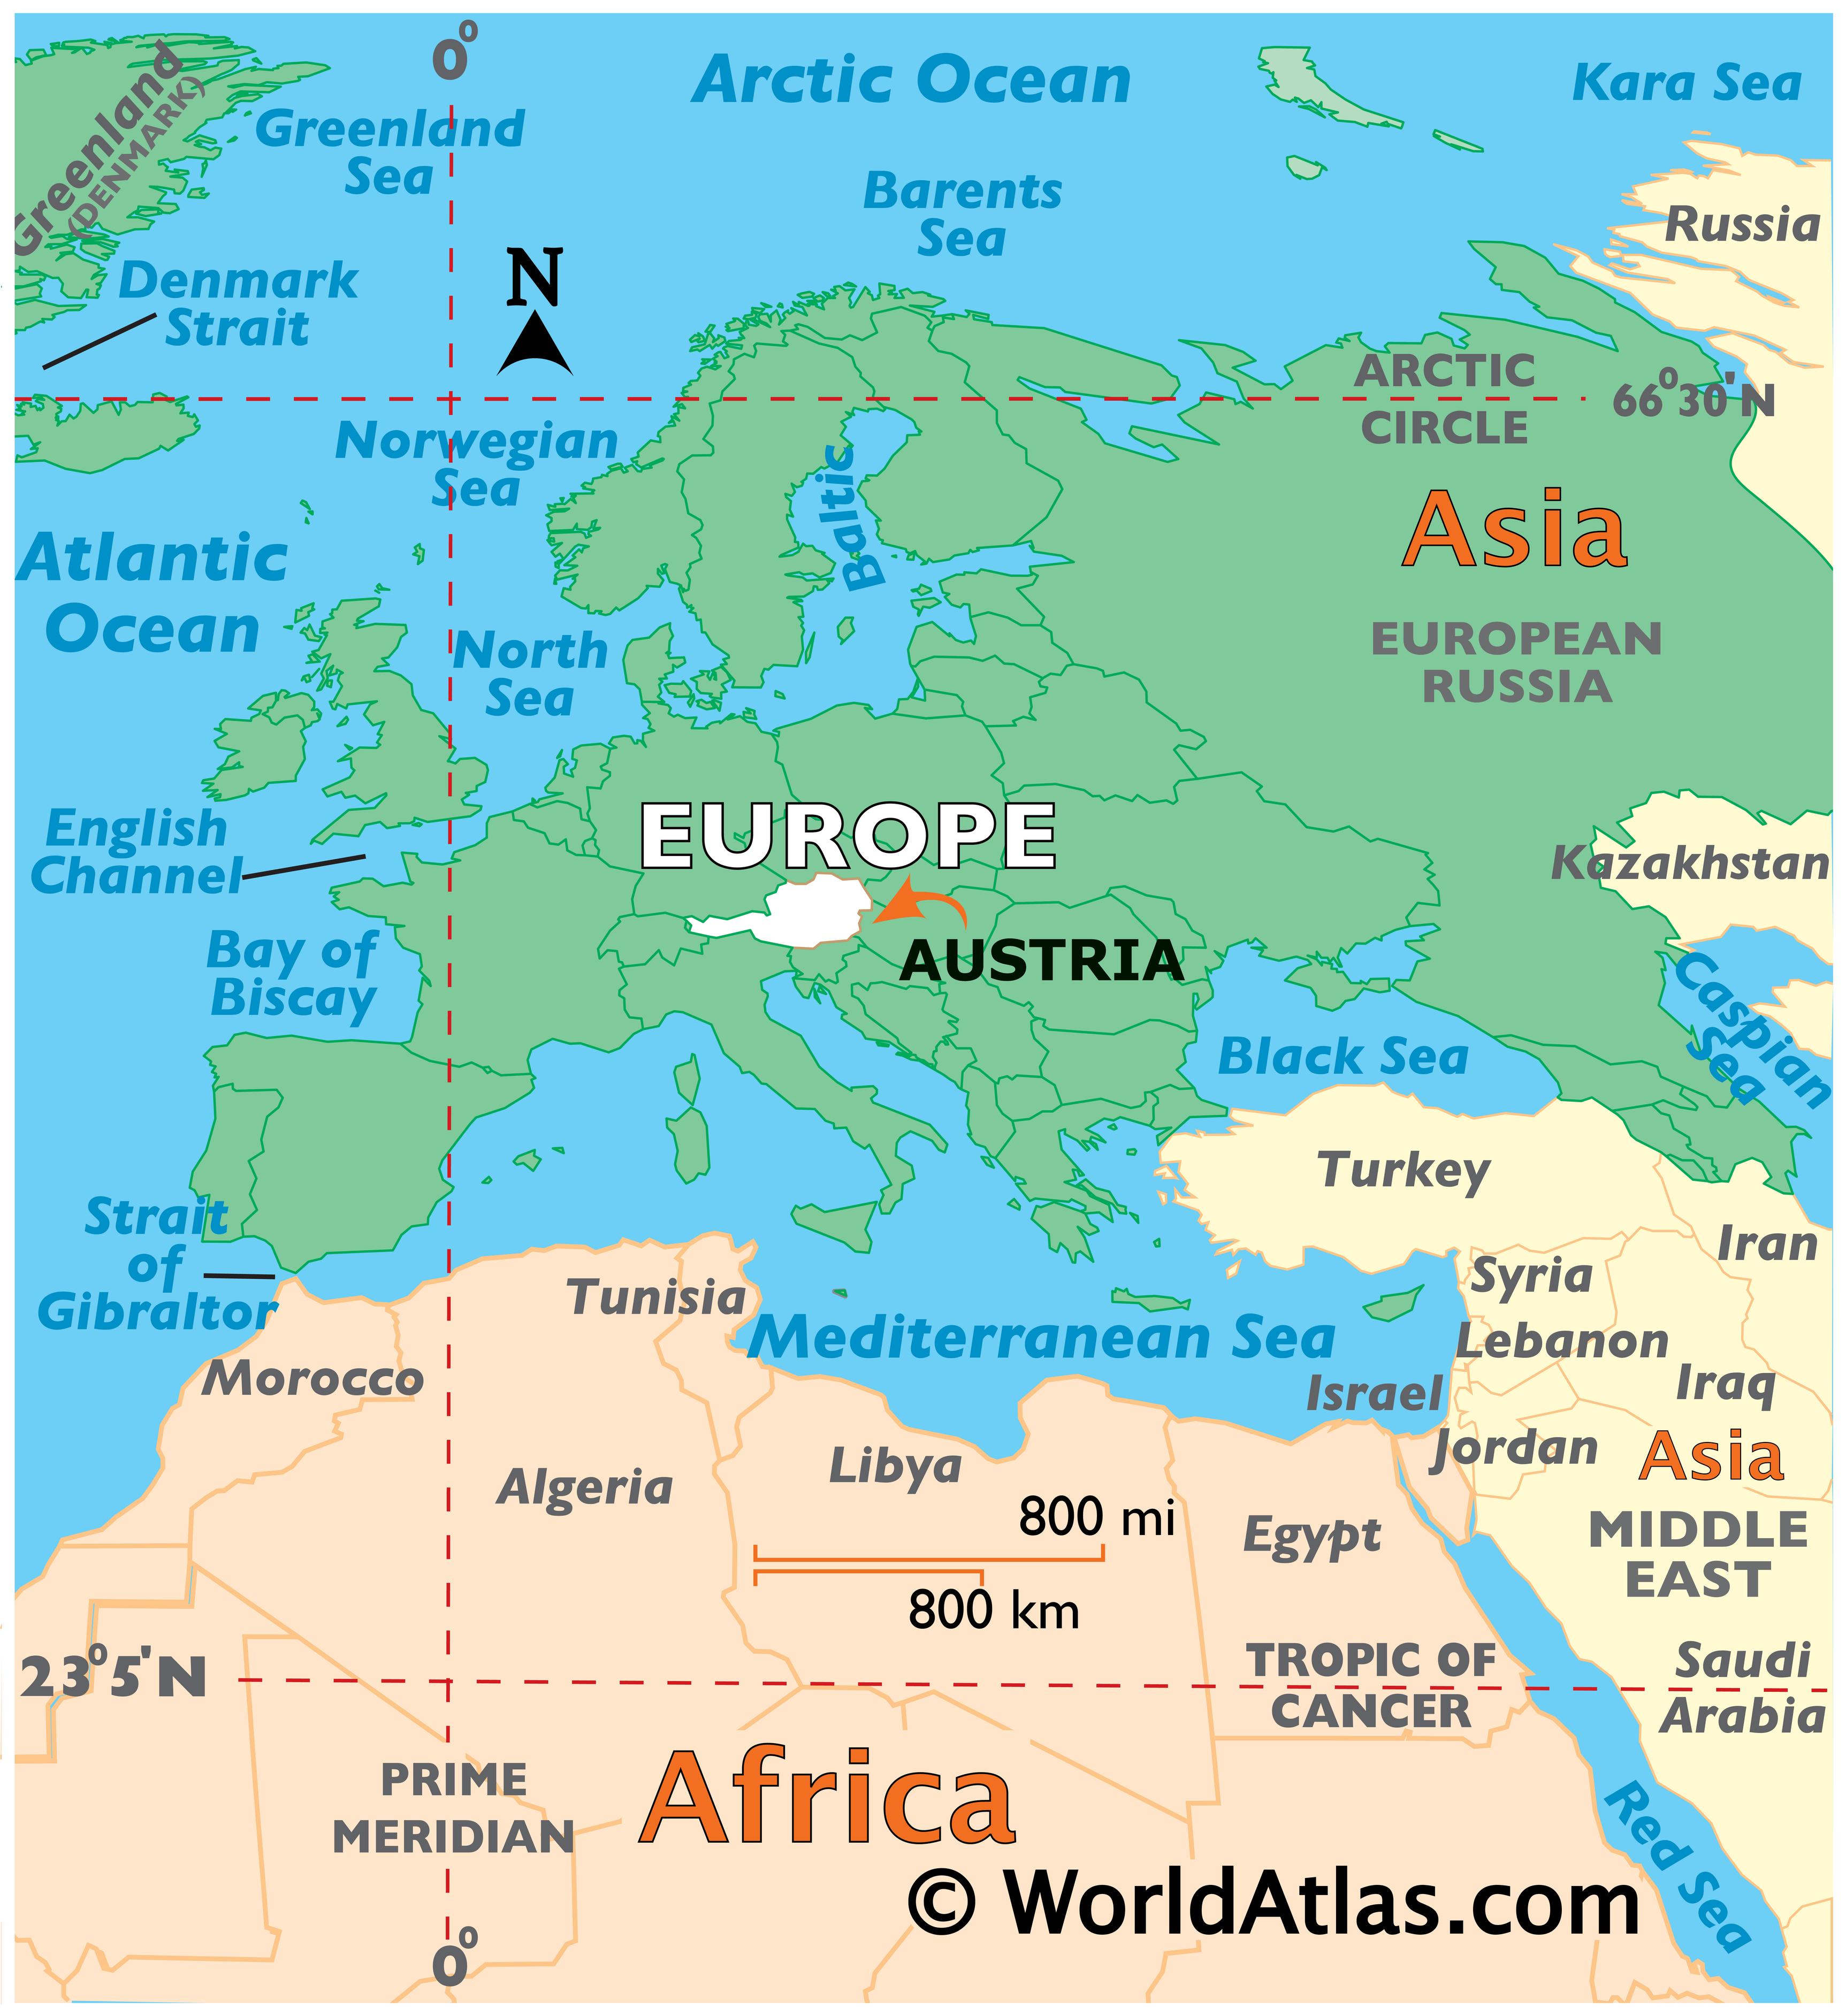 karta europe austrija Austria Map / Geography of Austria / Map of Austria   Worldatlas.com karta europe austrija